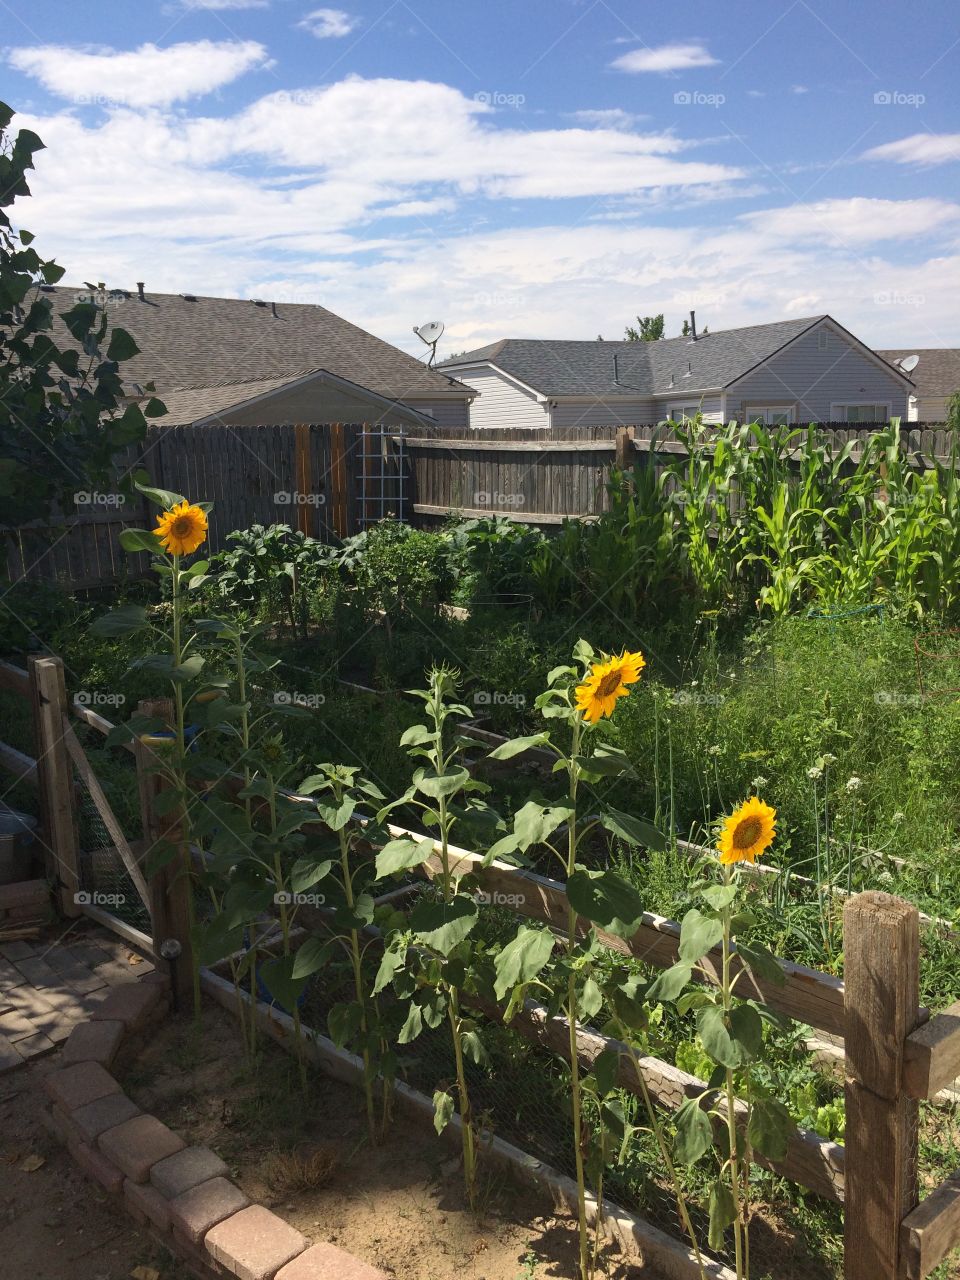 My backyard "farm" in July, 2016